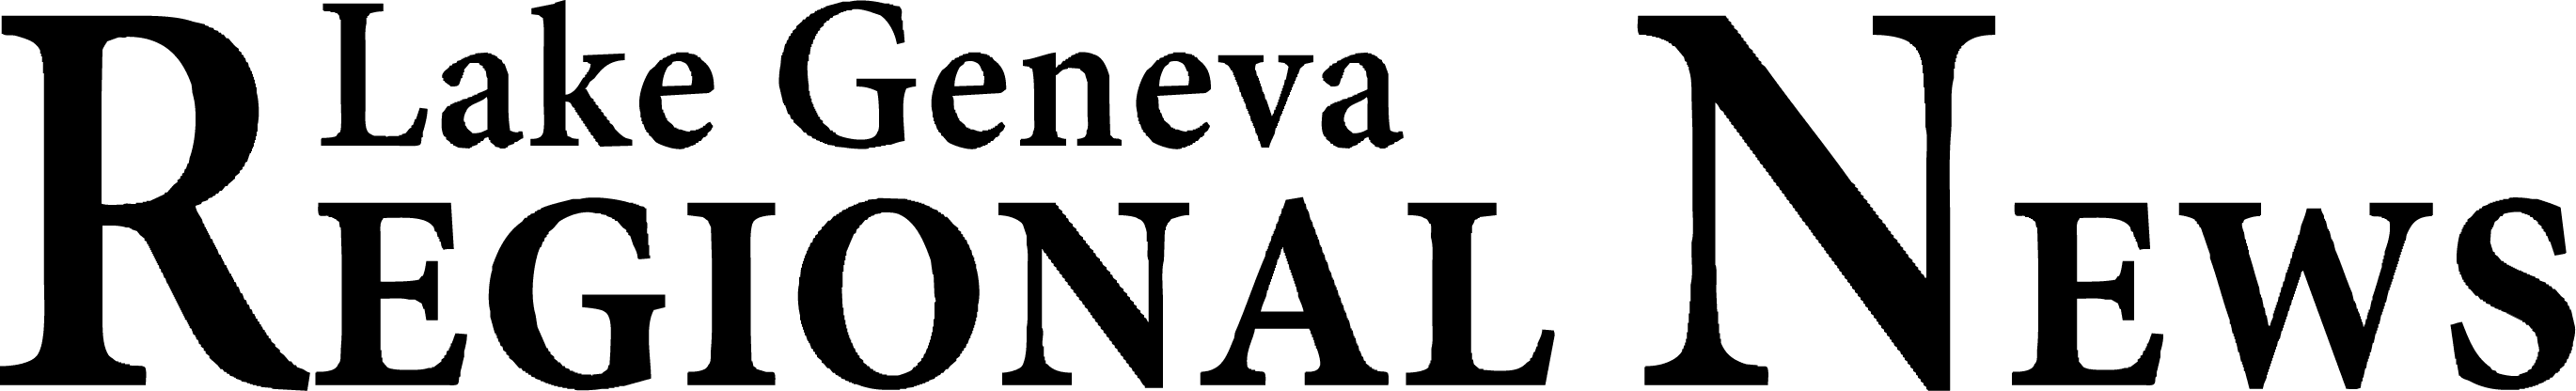 Lake Geneva Regional News logo